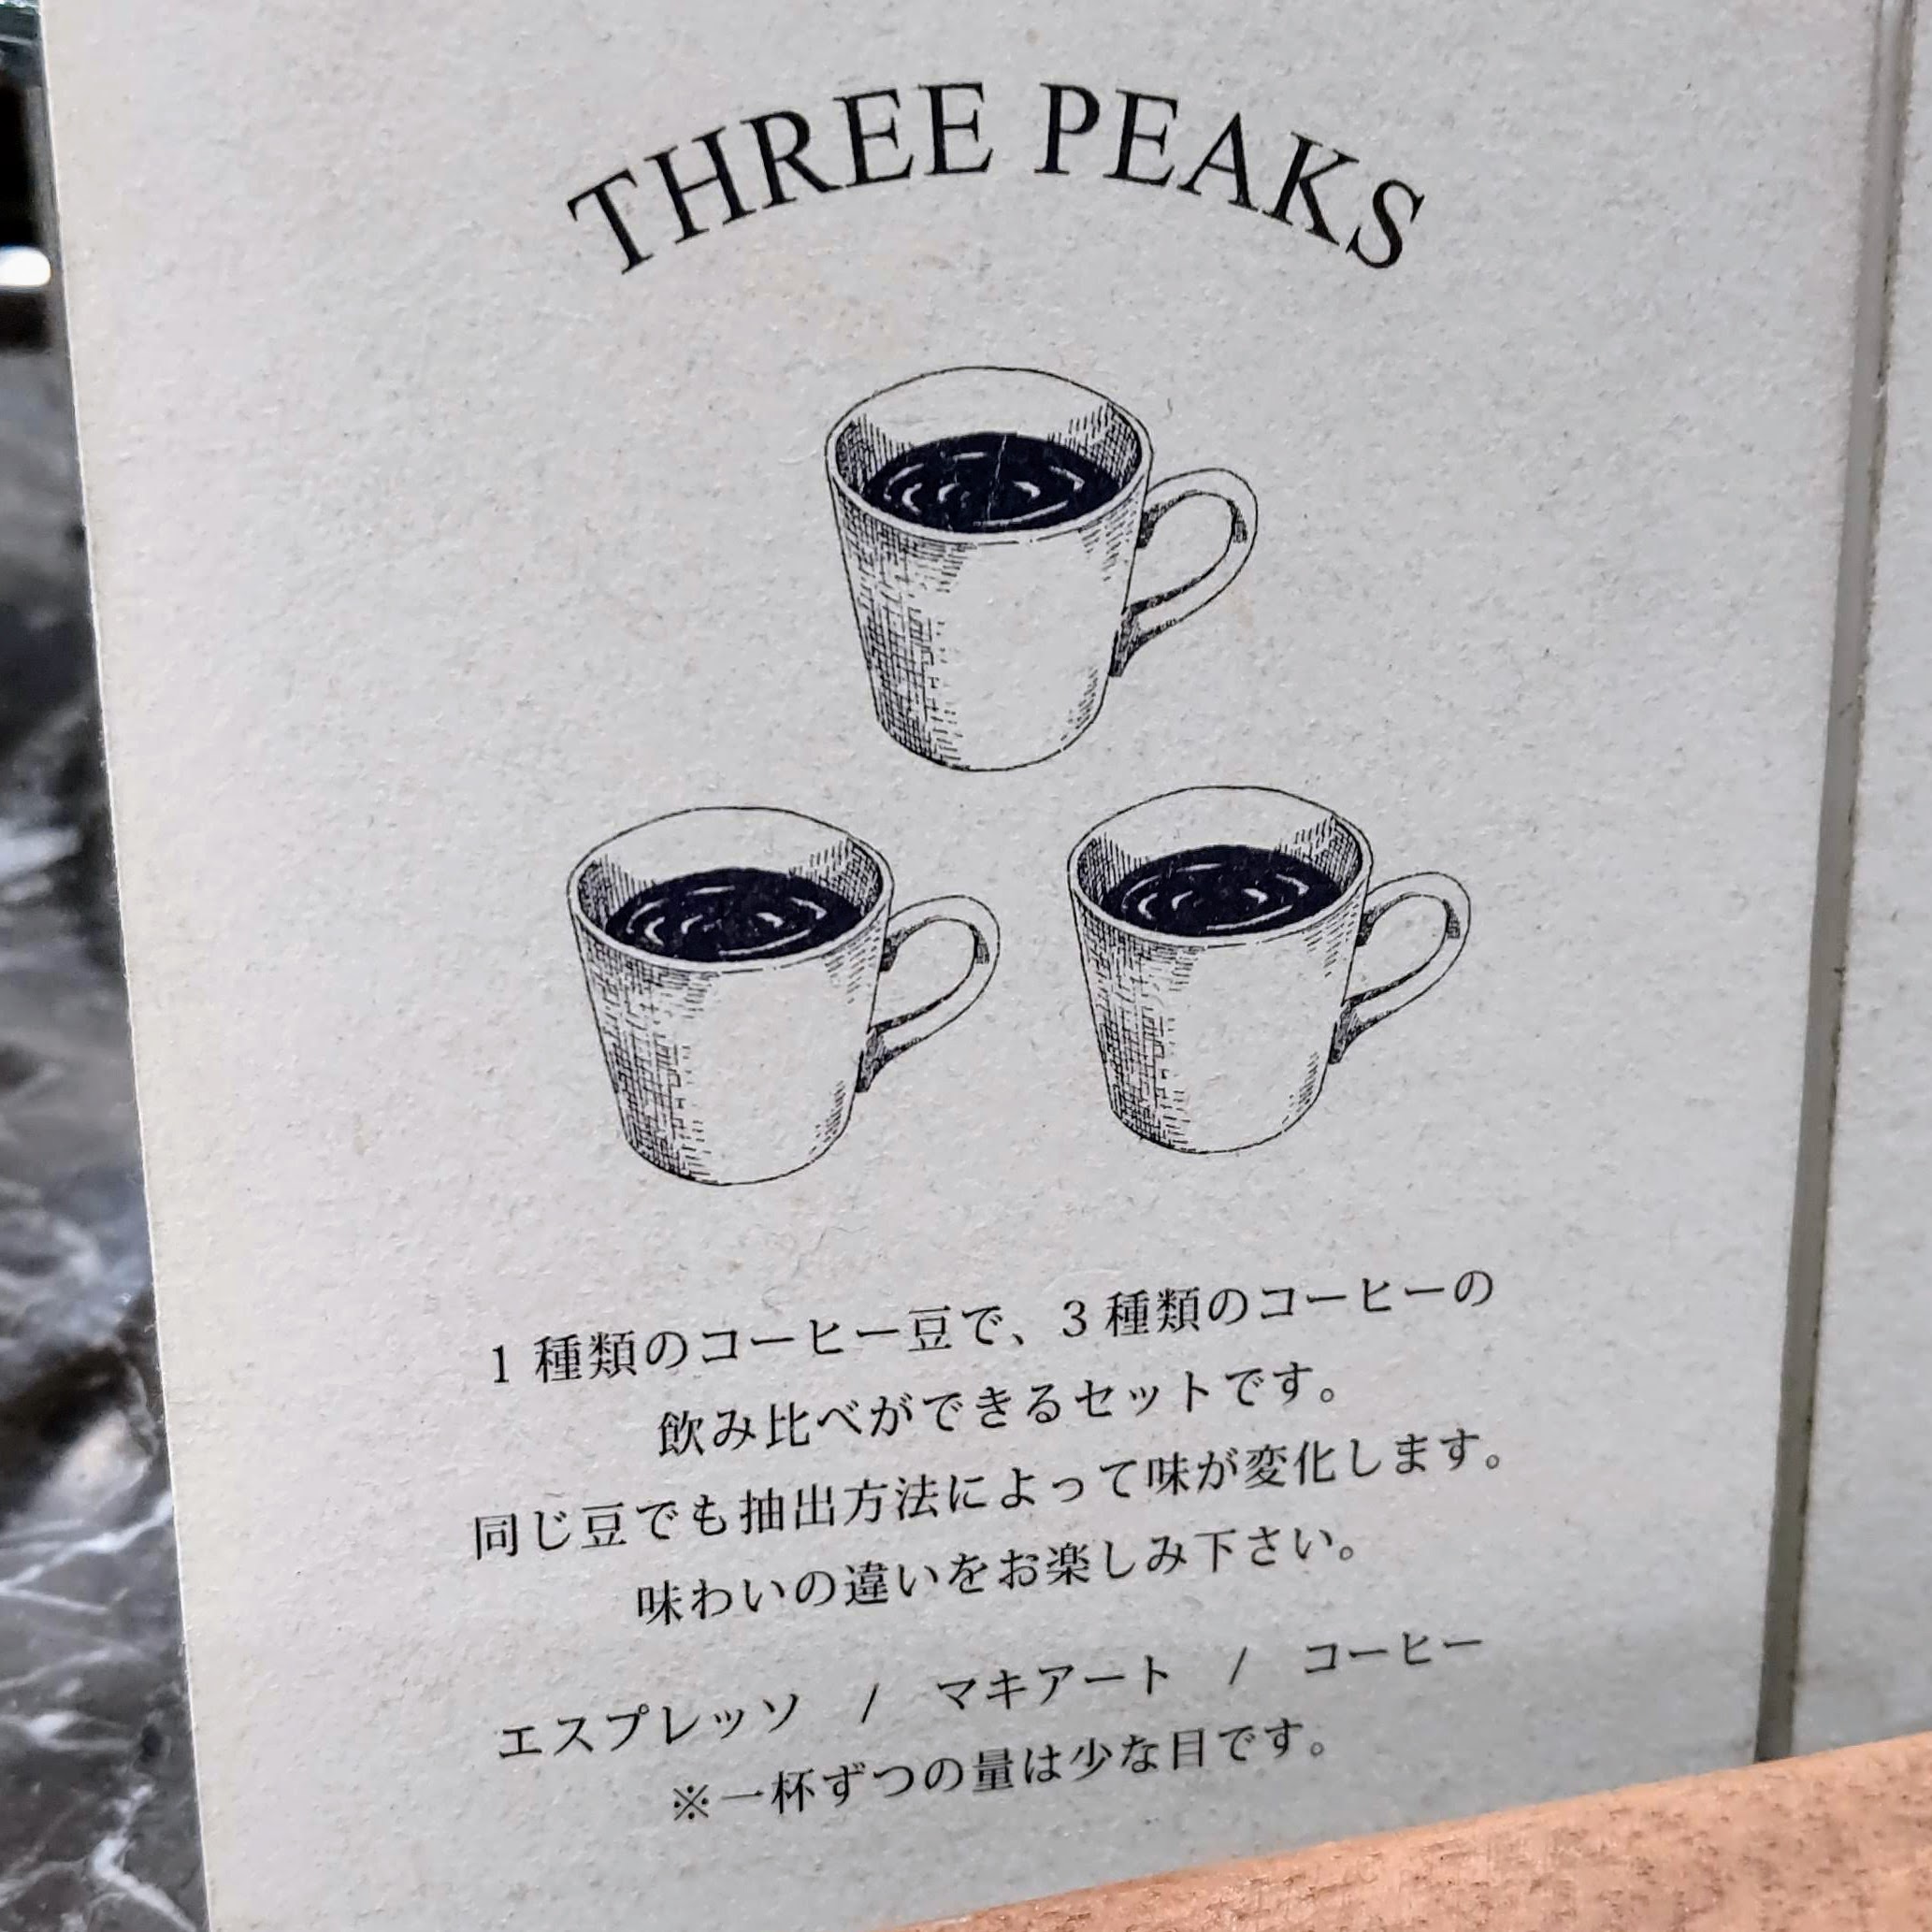 東京都豊島区 COFFEE VALLEY コーヒーバレー メニュー 3PEAKS スリーピークス